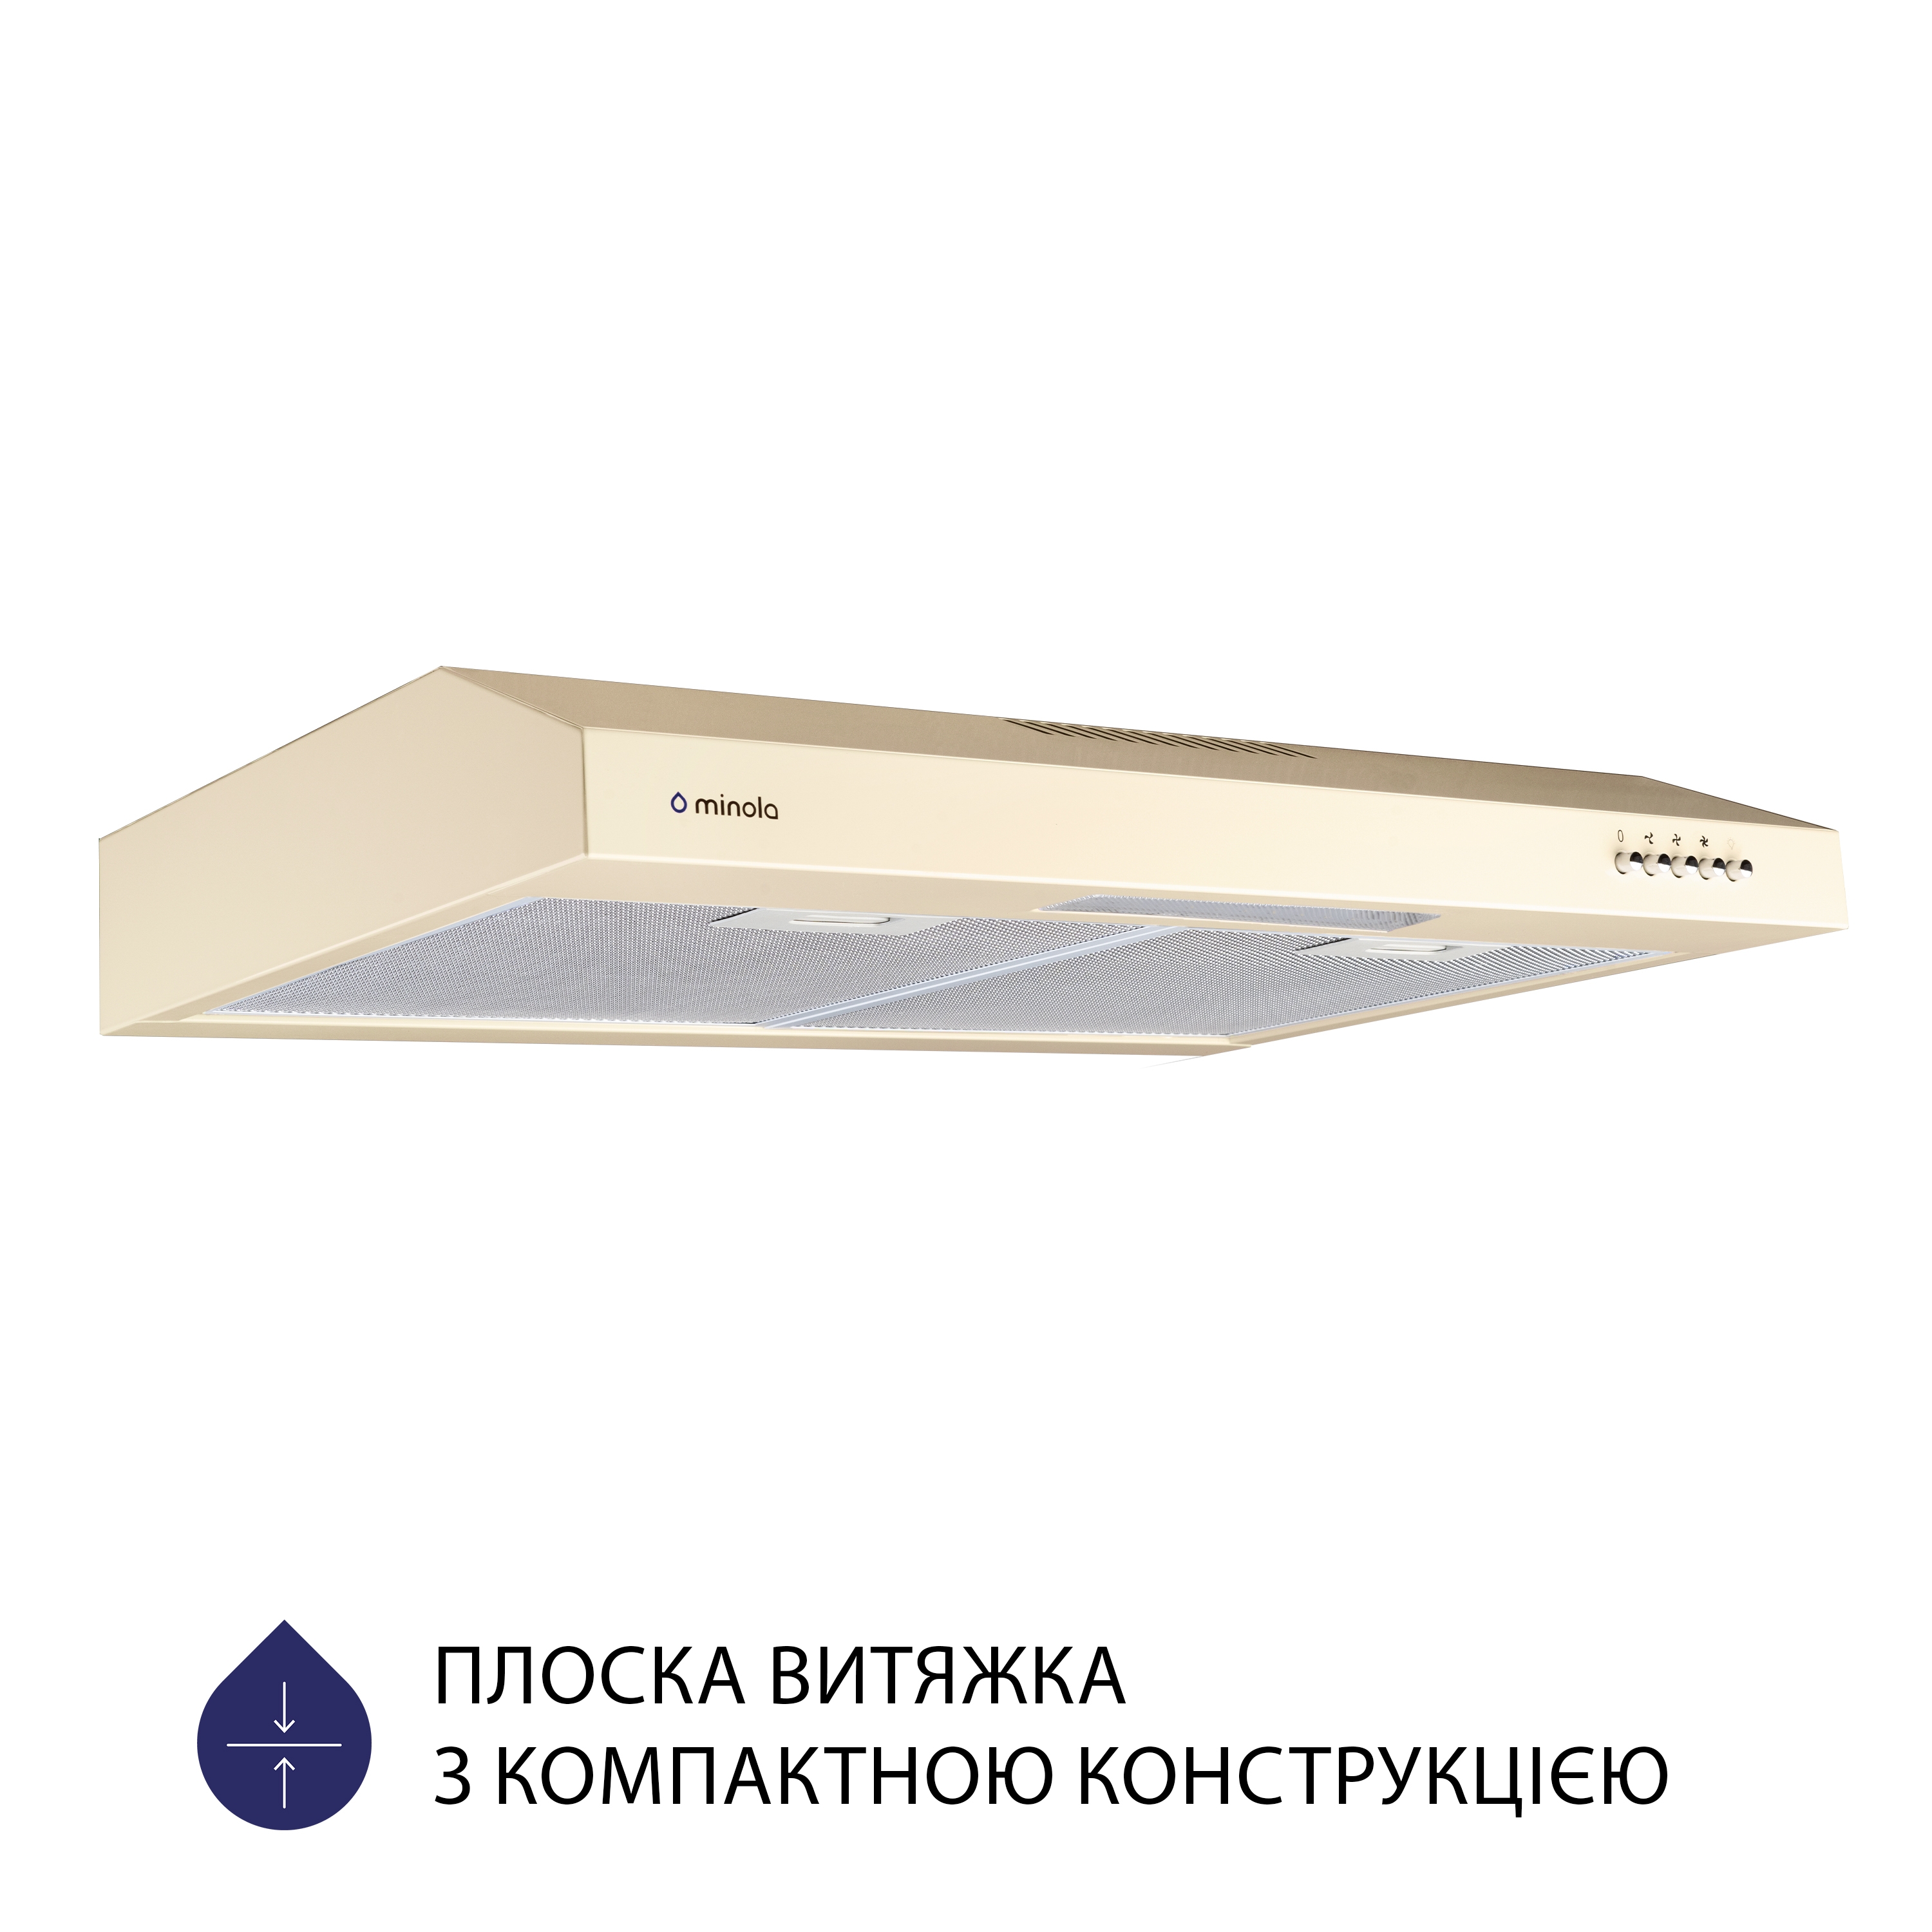 Витяжка кухонная плоская Minola HPL 612 IV цена 2189.00 грн - фотография 2